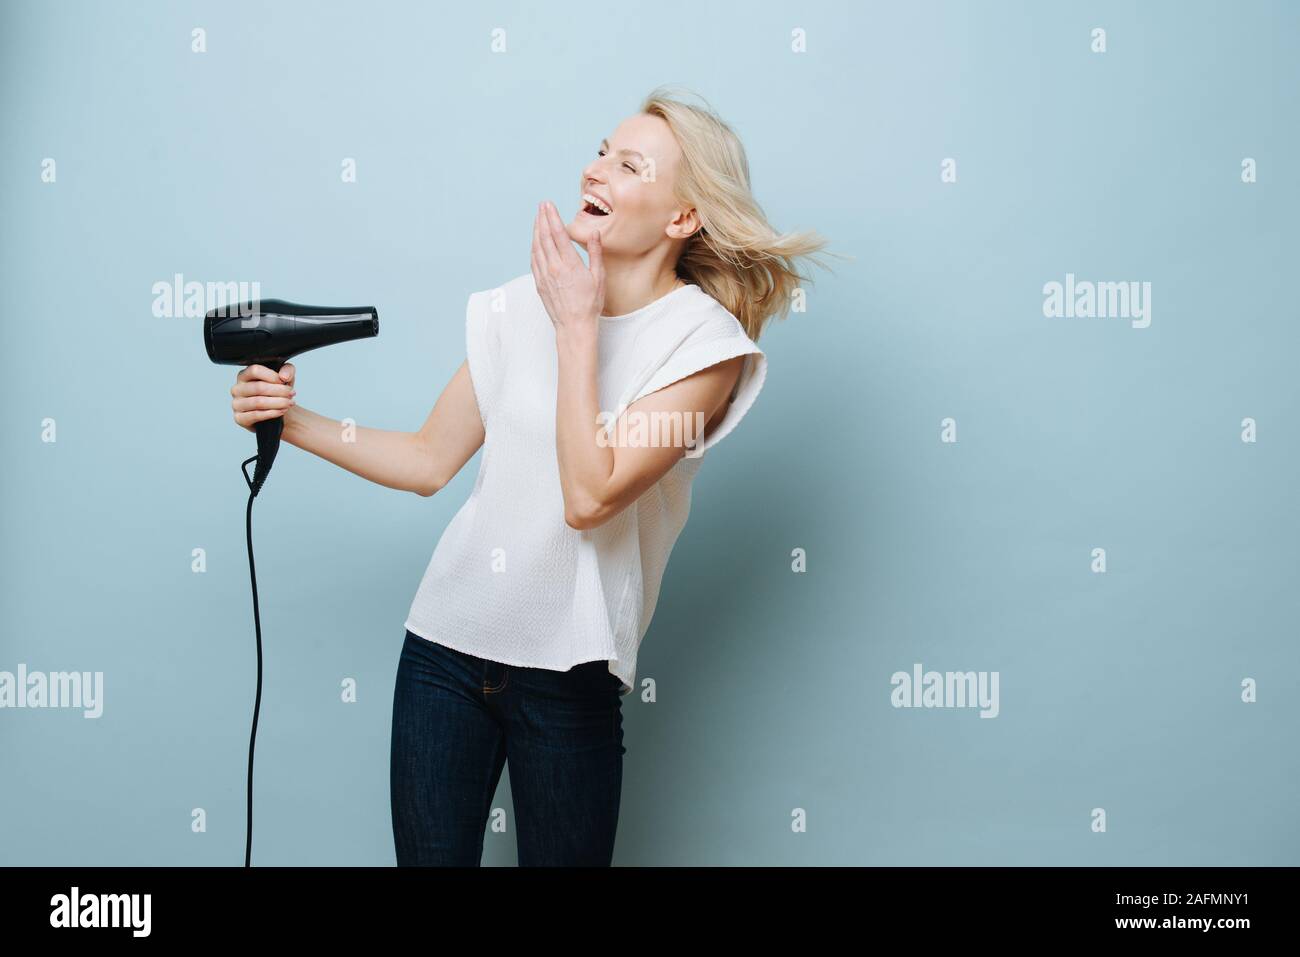 Rire blonde woman blowing elle-même dans un visage avec un sèche-cheveux plus de blue Banque D'Images